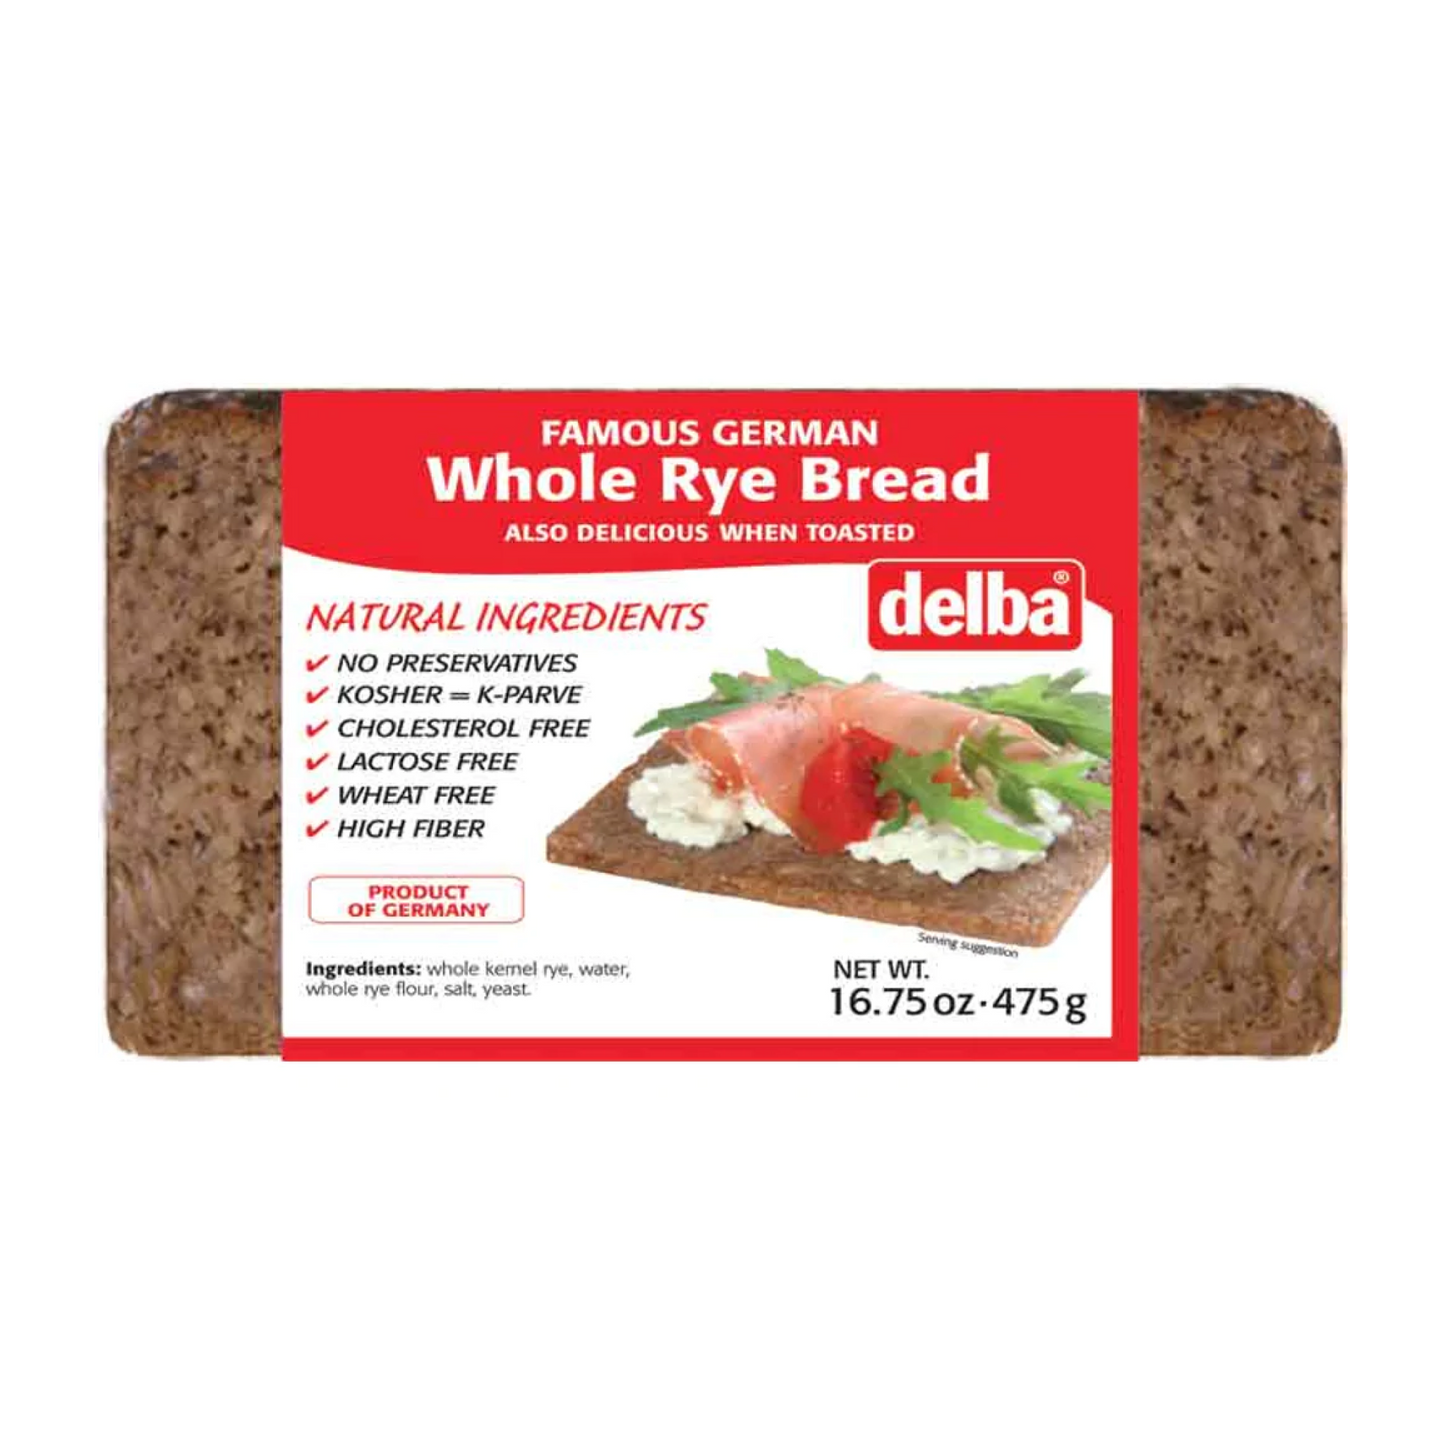 Delba Famous German Whole Rye Bread 475g